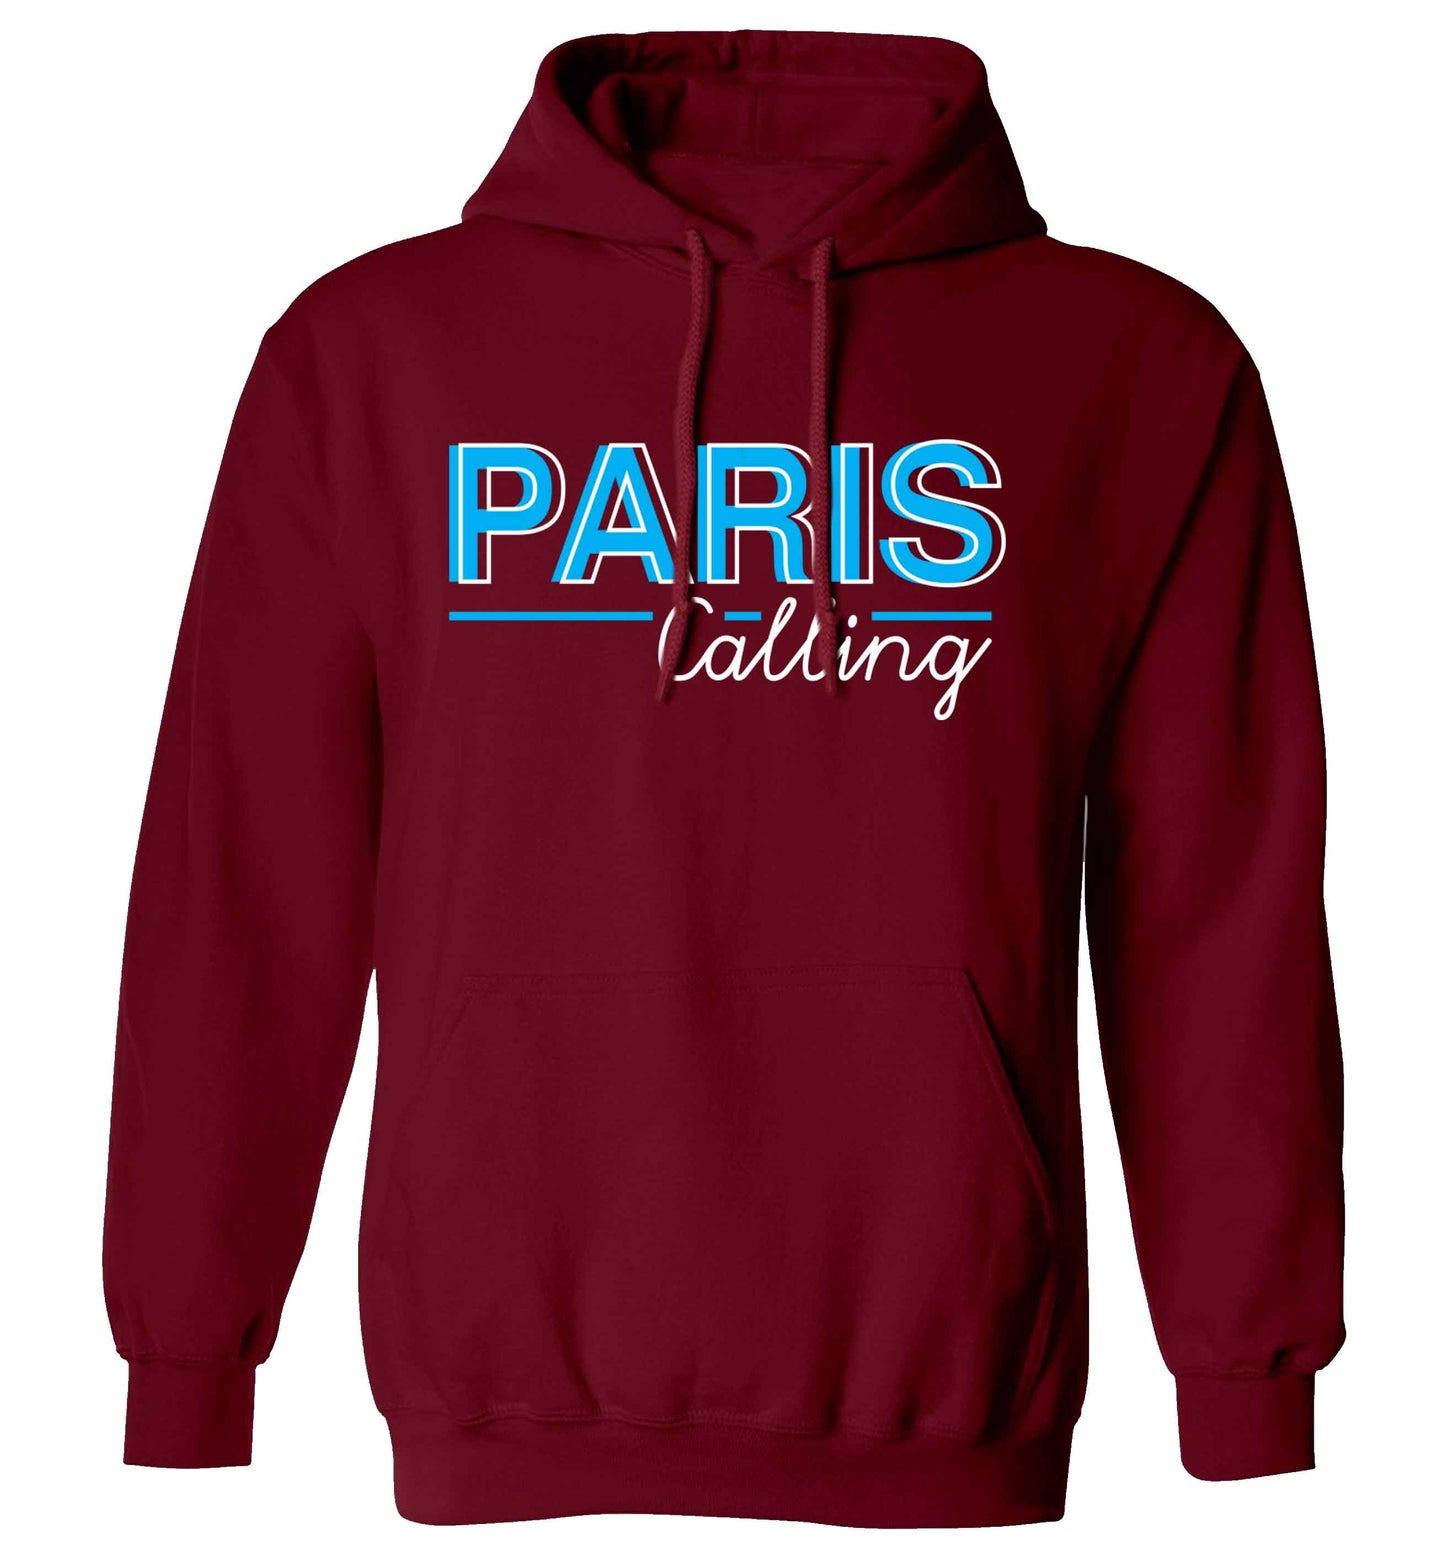 Paris calling adults unisex maroon hoodie 2XL